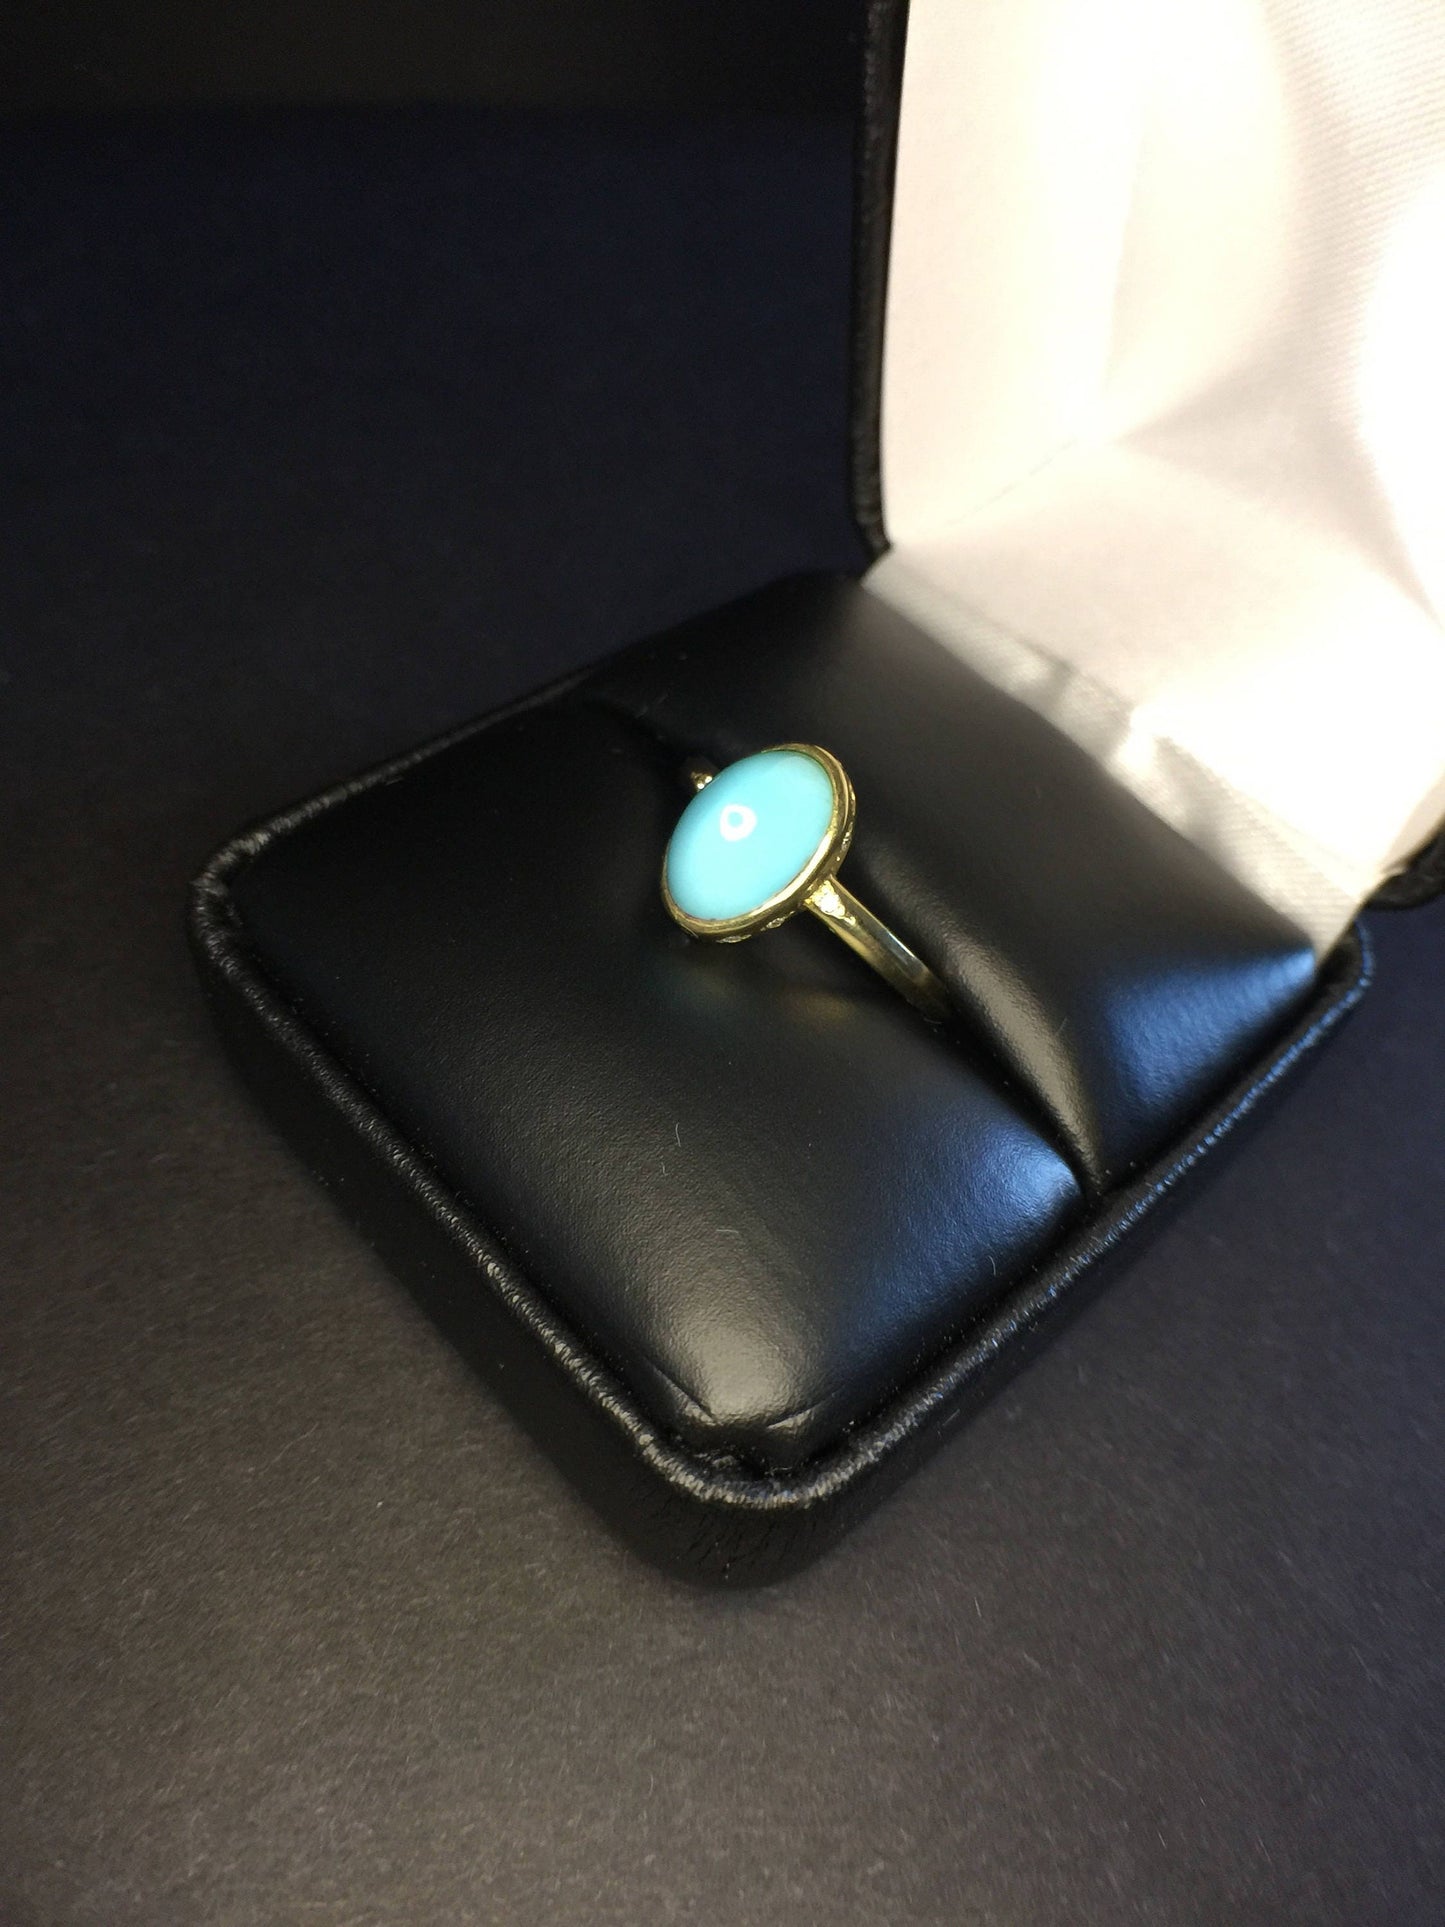 Robin’s Egg Turquoise Ring-18k Gold